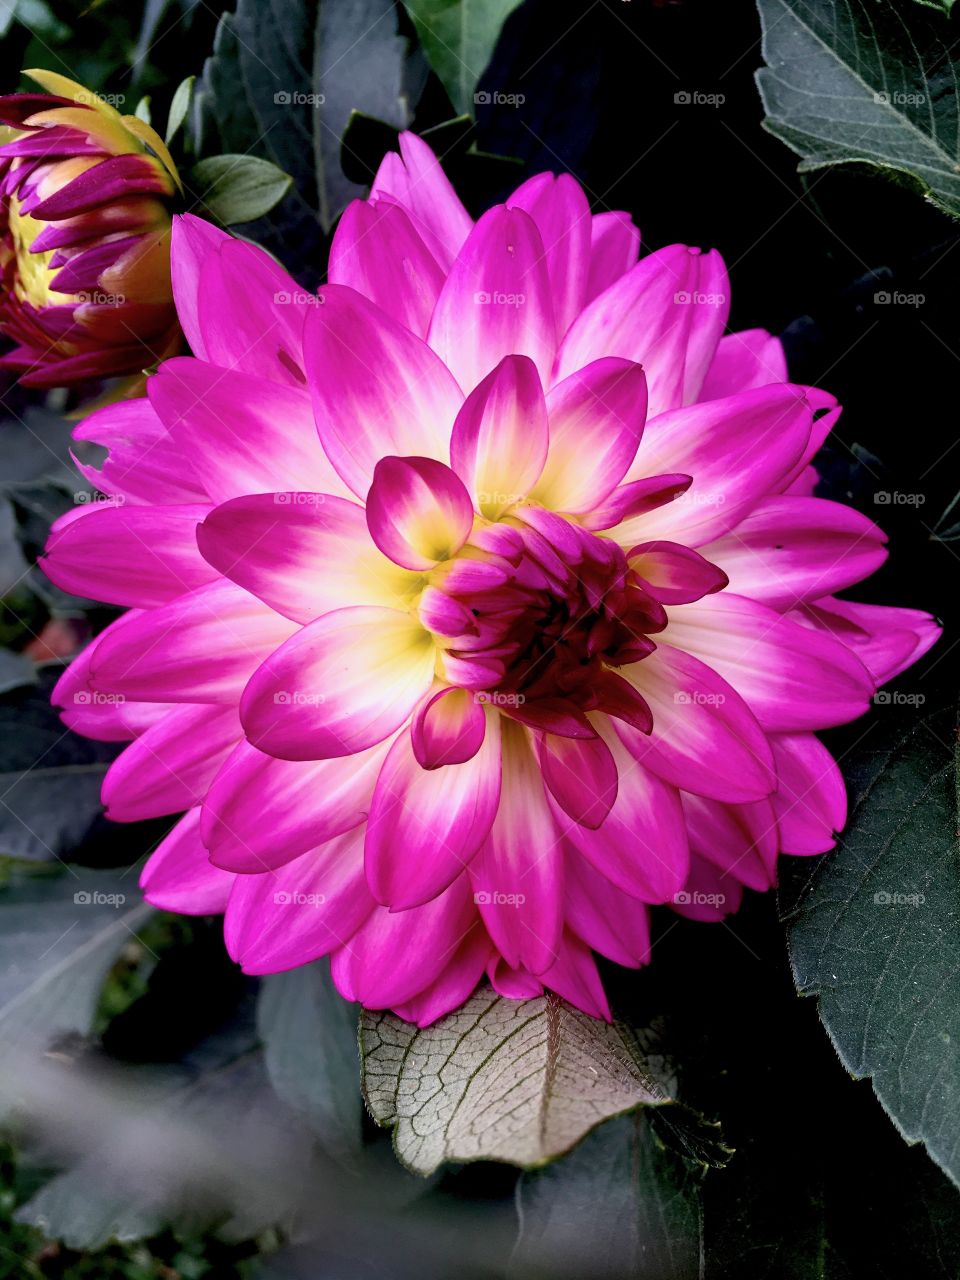 Bright pink flower